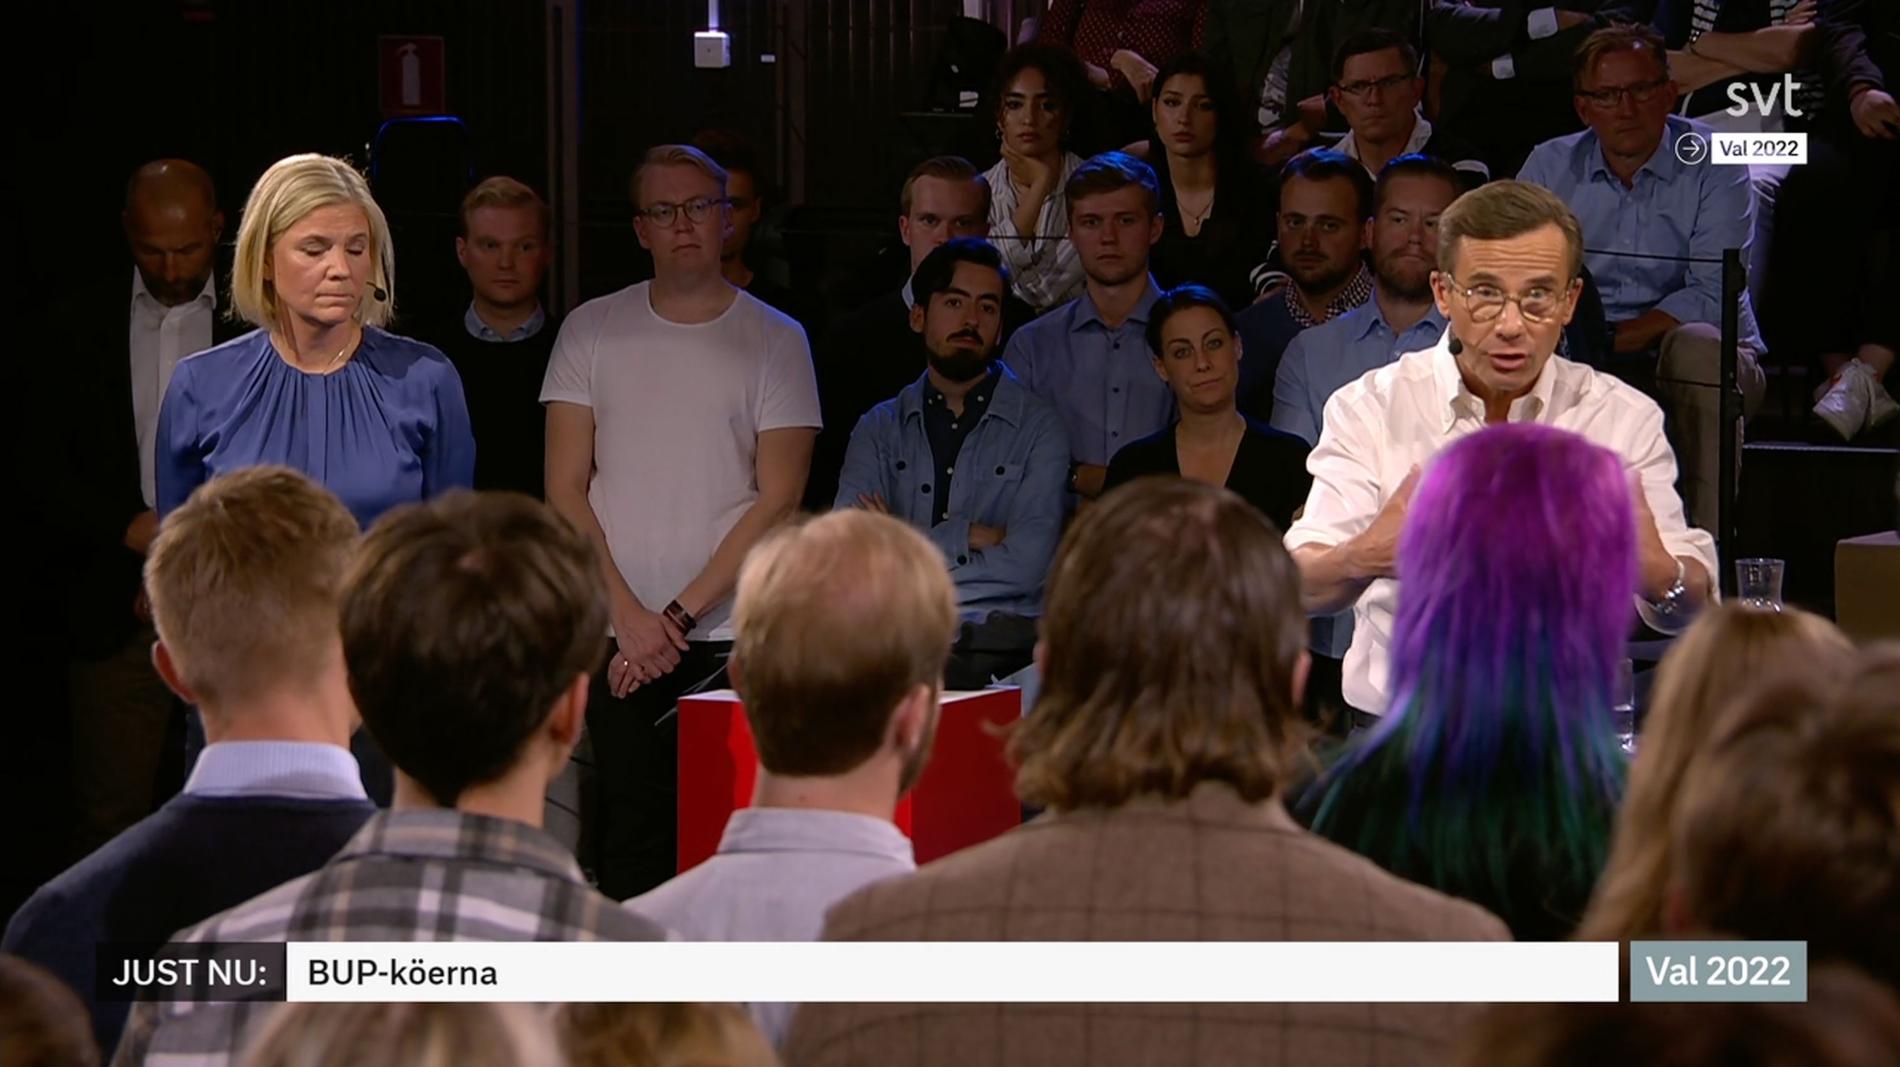 Anna medverkades som publik i SVT:s statsministerduell i höstas. Då fick hon ett löfte från Ulf Kristersson (M).